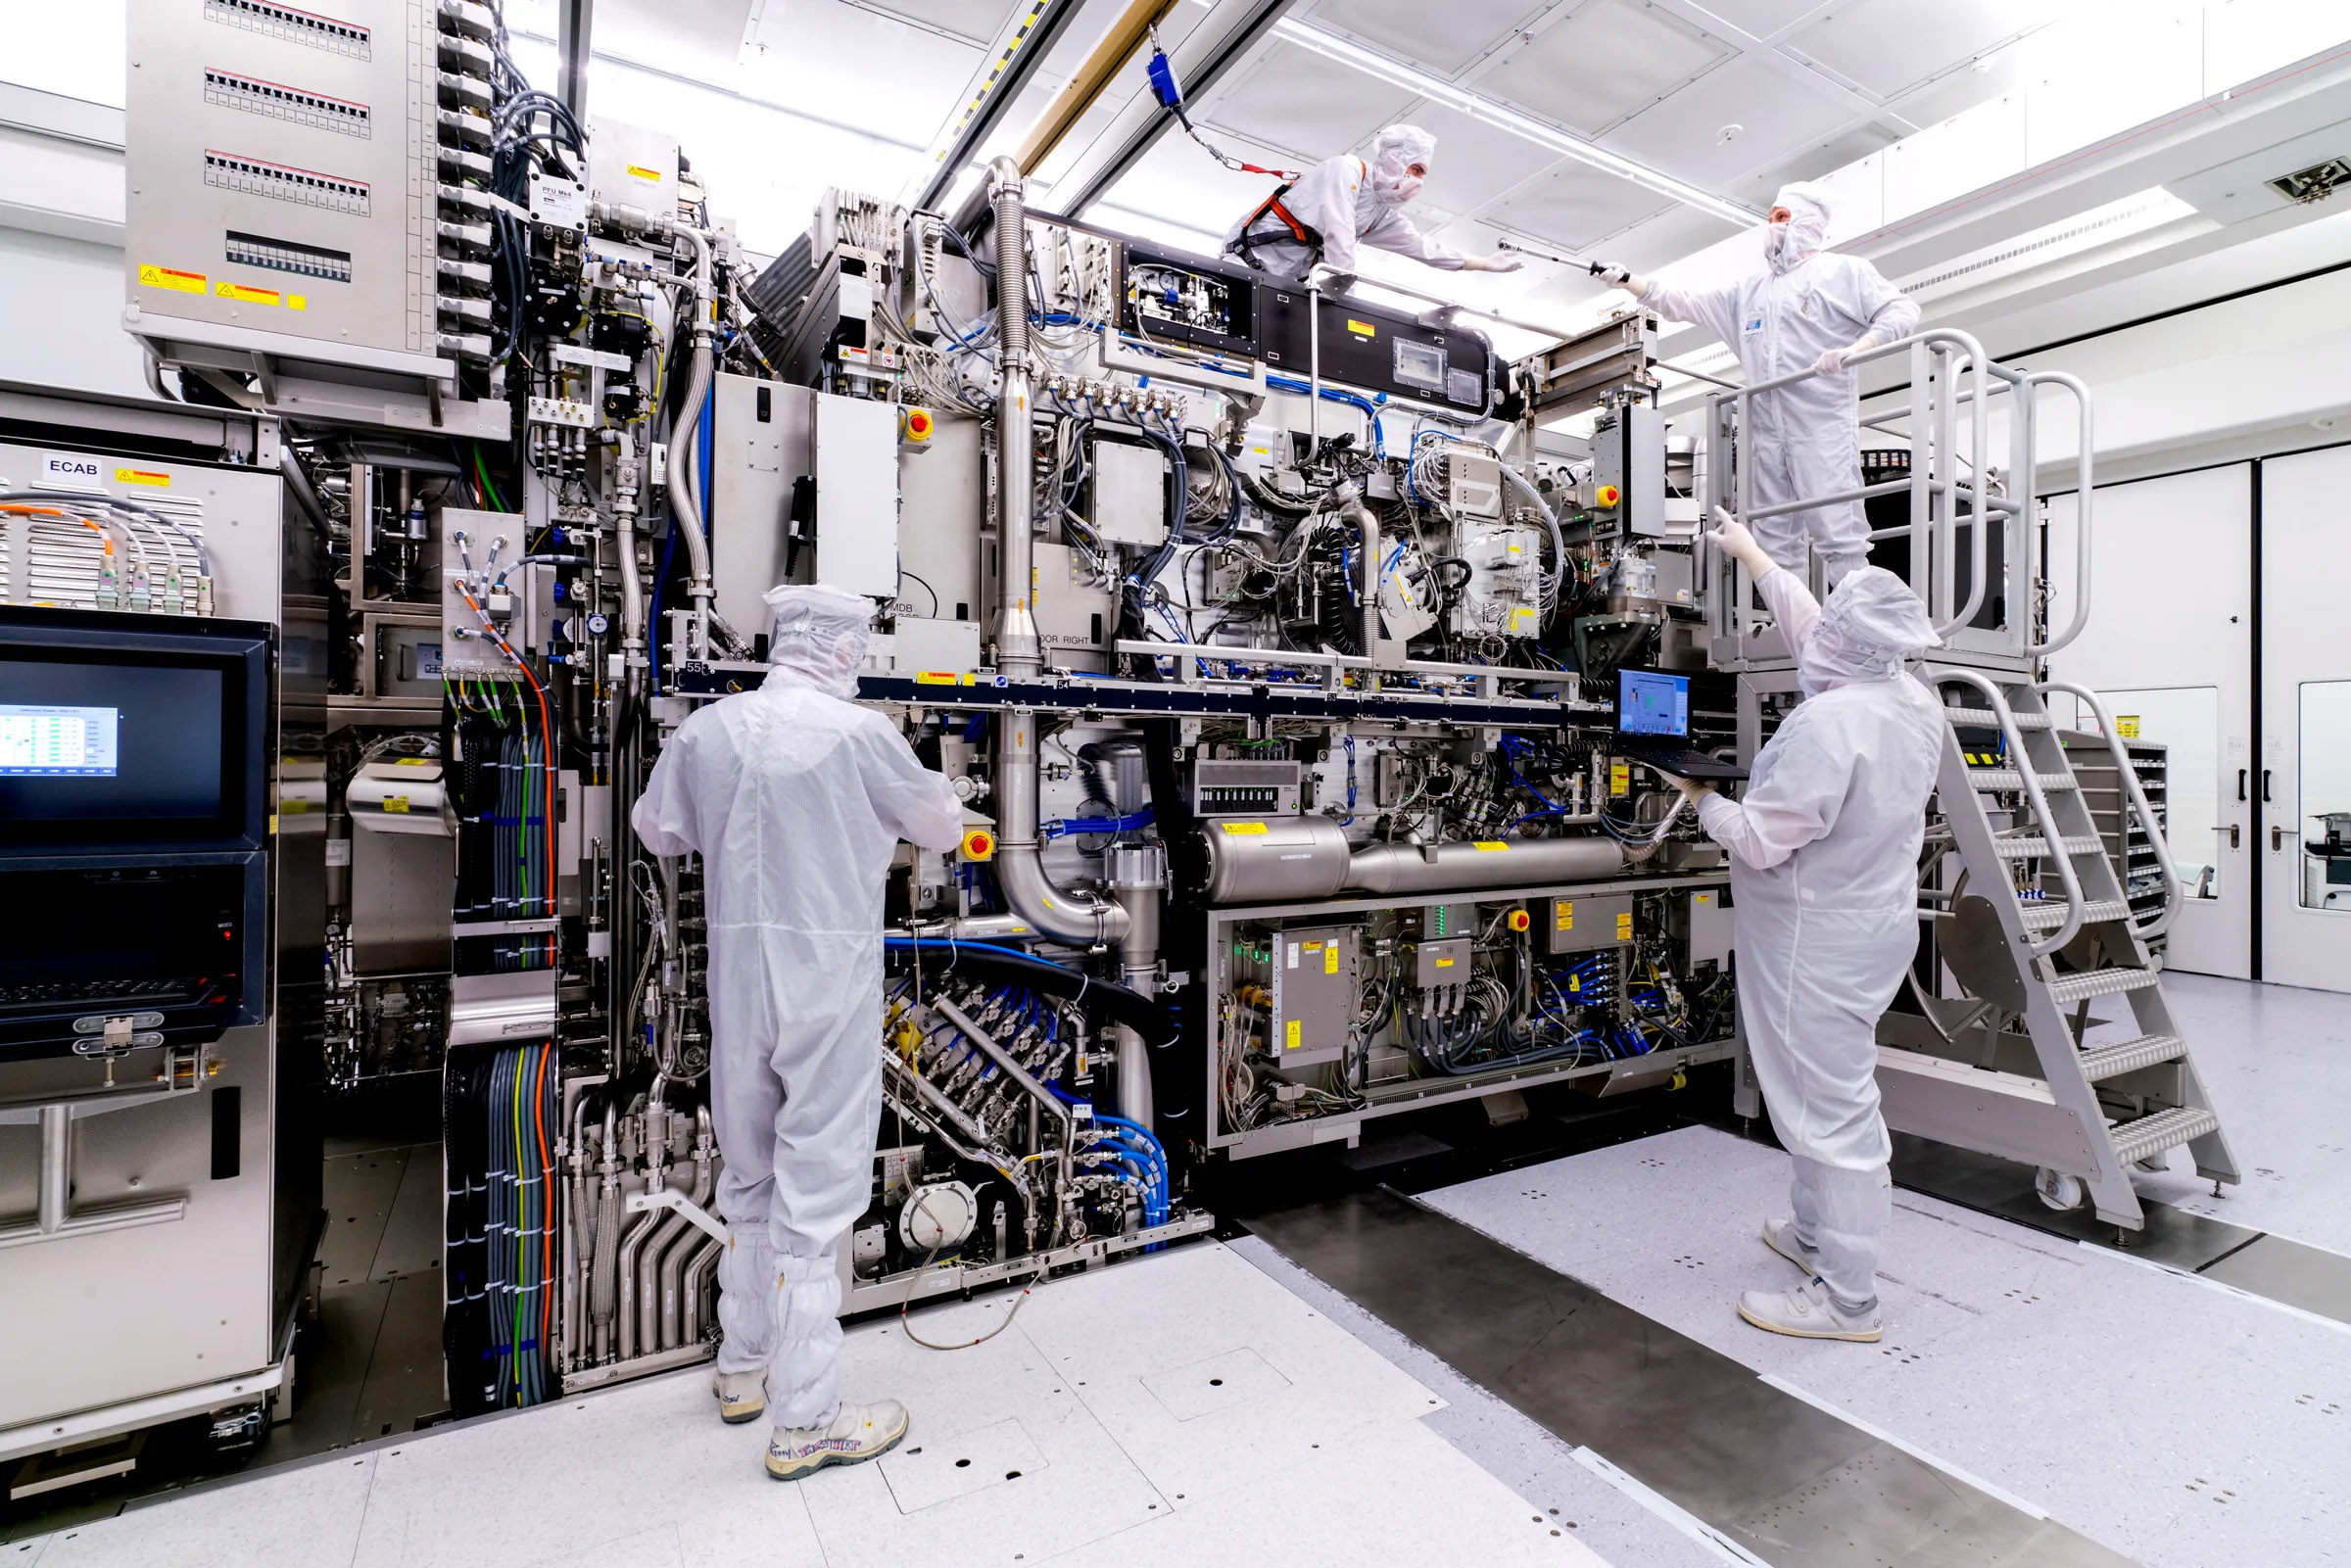 Mỹ tìm cách yêu cầu ASML Hà Lan ngưng bán máy và công nghệ sản xuất chip bán dẫn cho Trung Quốc